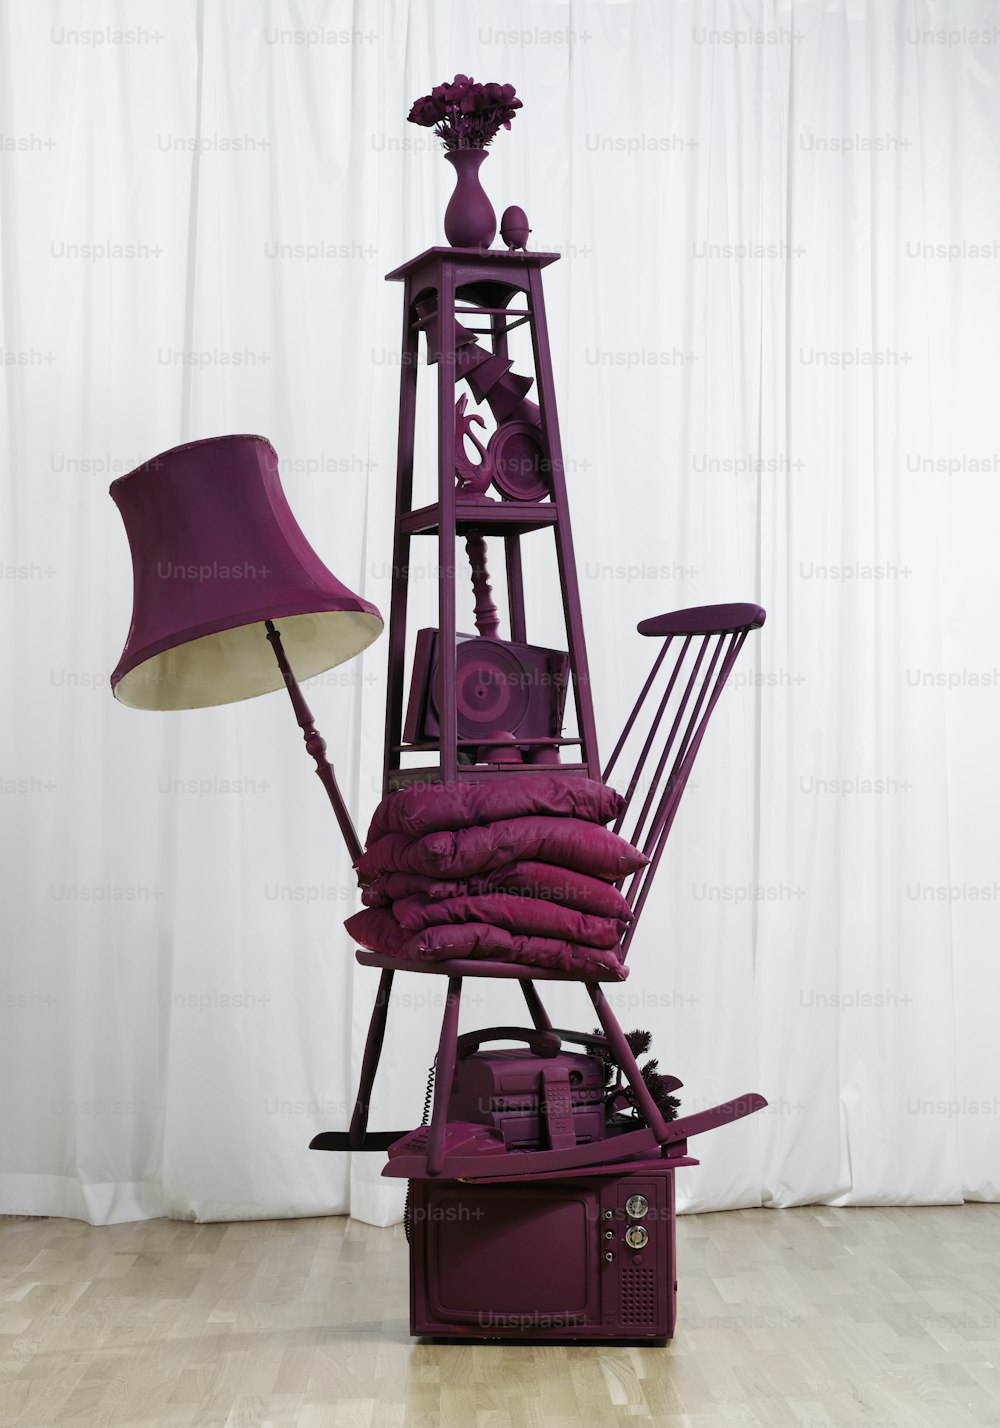 その上にランプが付いた紫色の彫刻